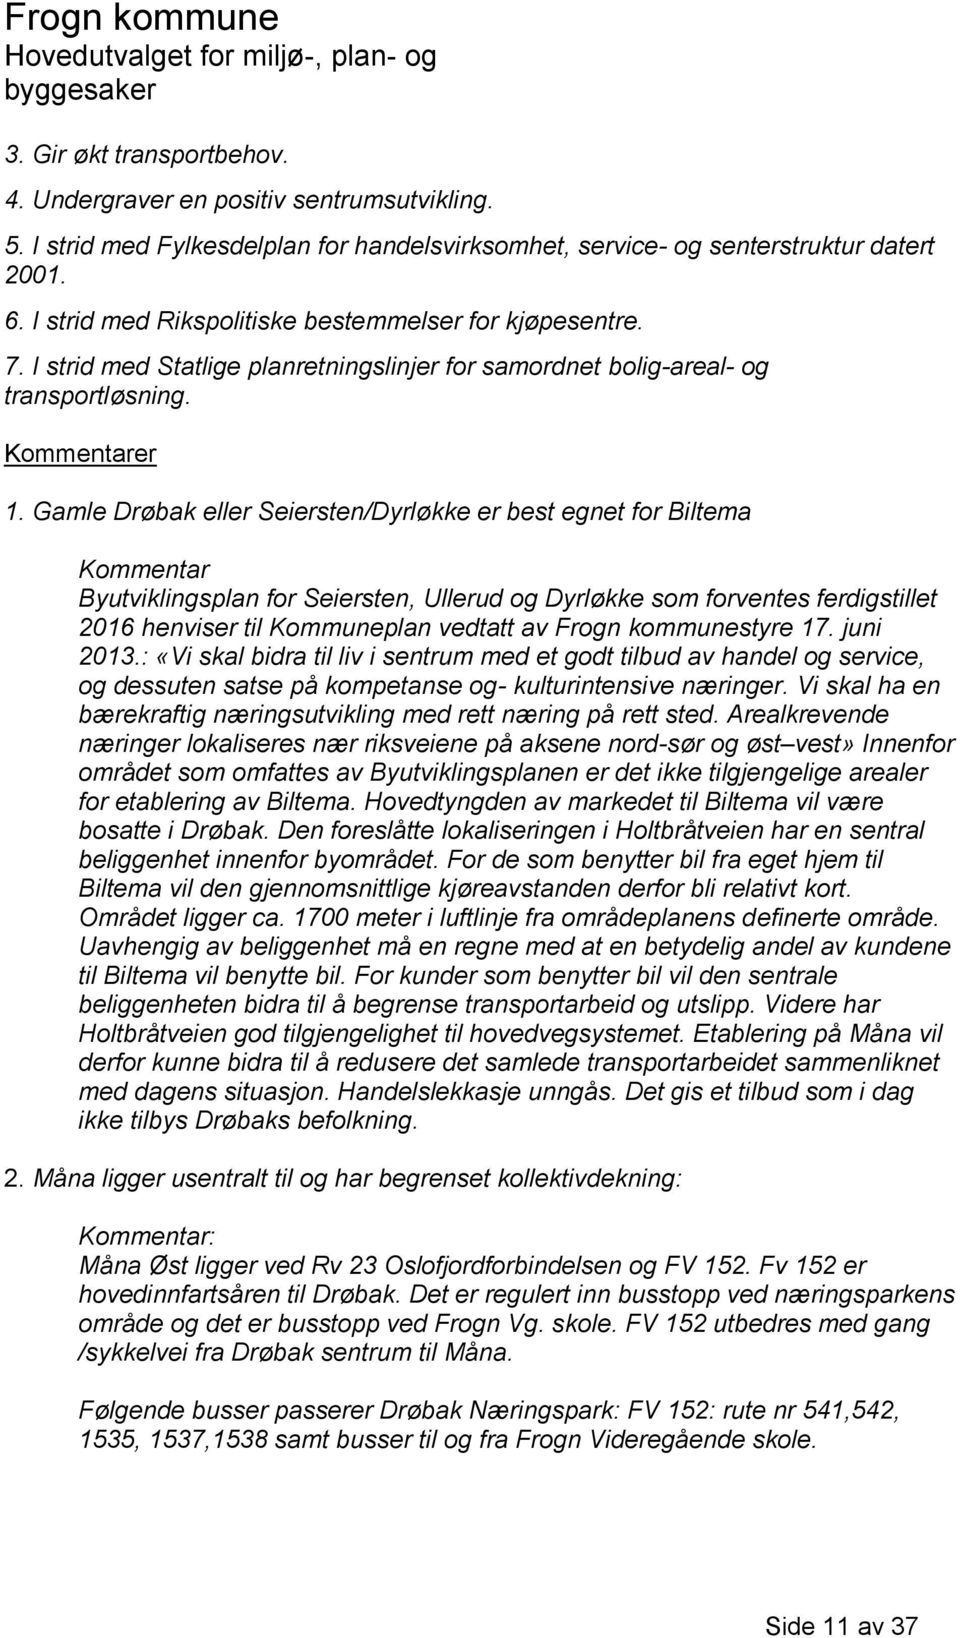 Gamle Drøbak eller Seiersten/Dyrløkke er best egnet for Biltema Kommentar Byutviklingsplan for Seiersten, Ullerud og Dyrløkke som forventes ferdigstillet 2016 henviser til Kommuneplan vedtatt av